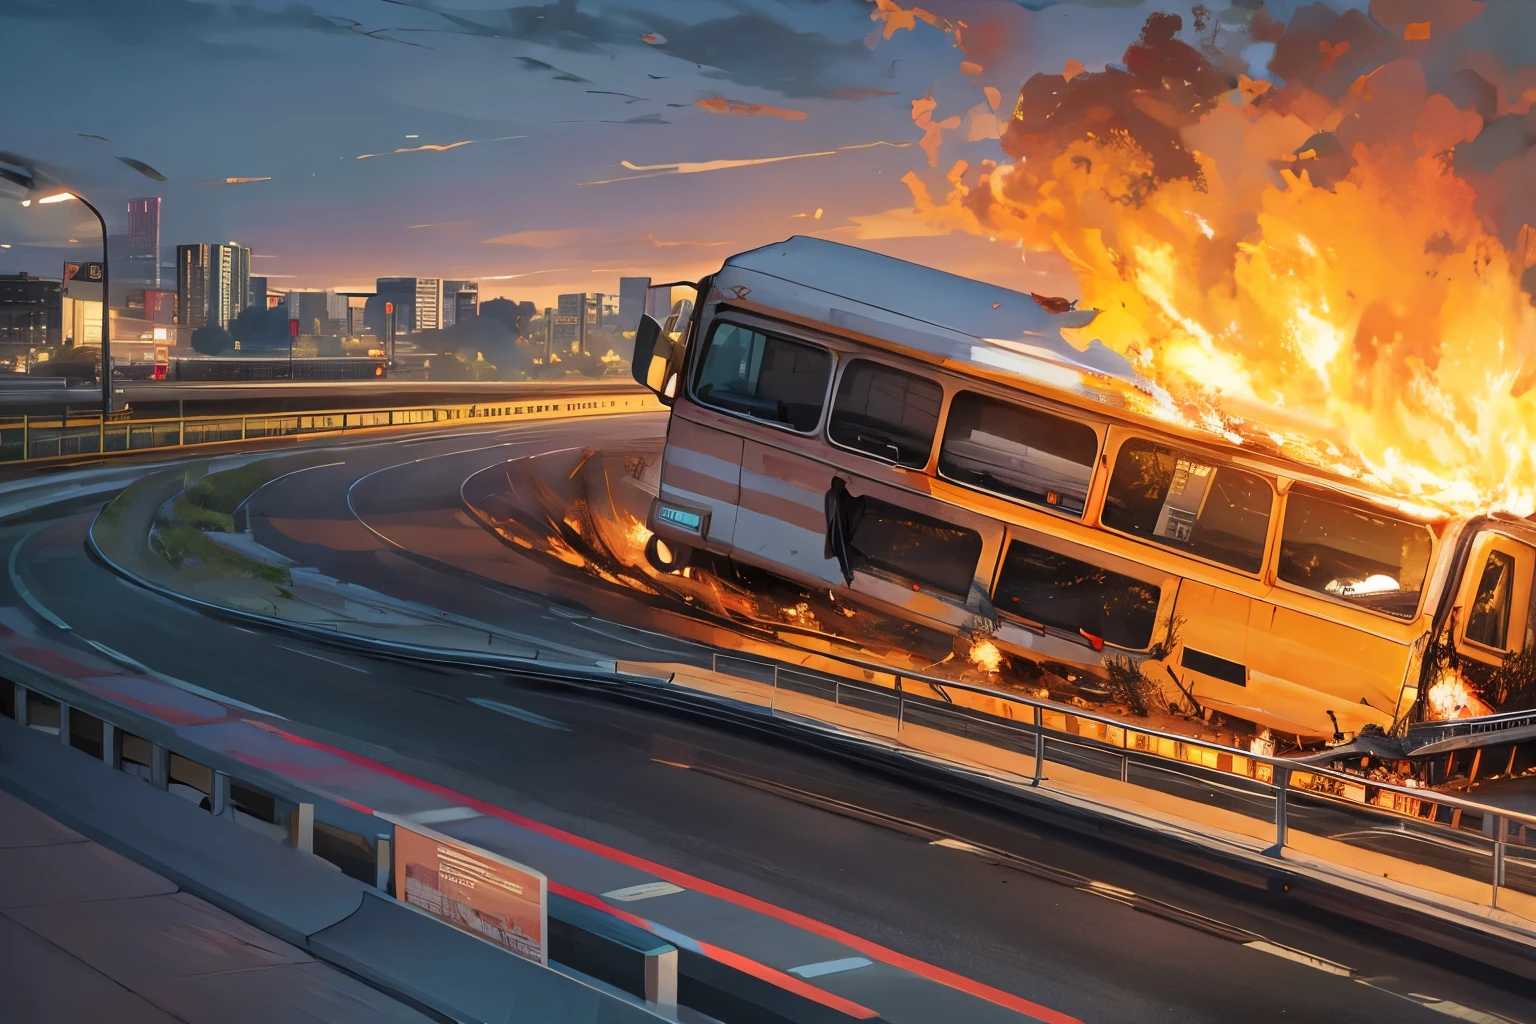 高速公路, 一辆公共汽车翻倒, 长途客车起火